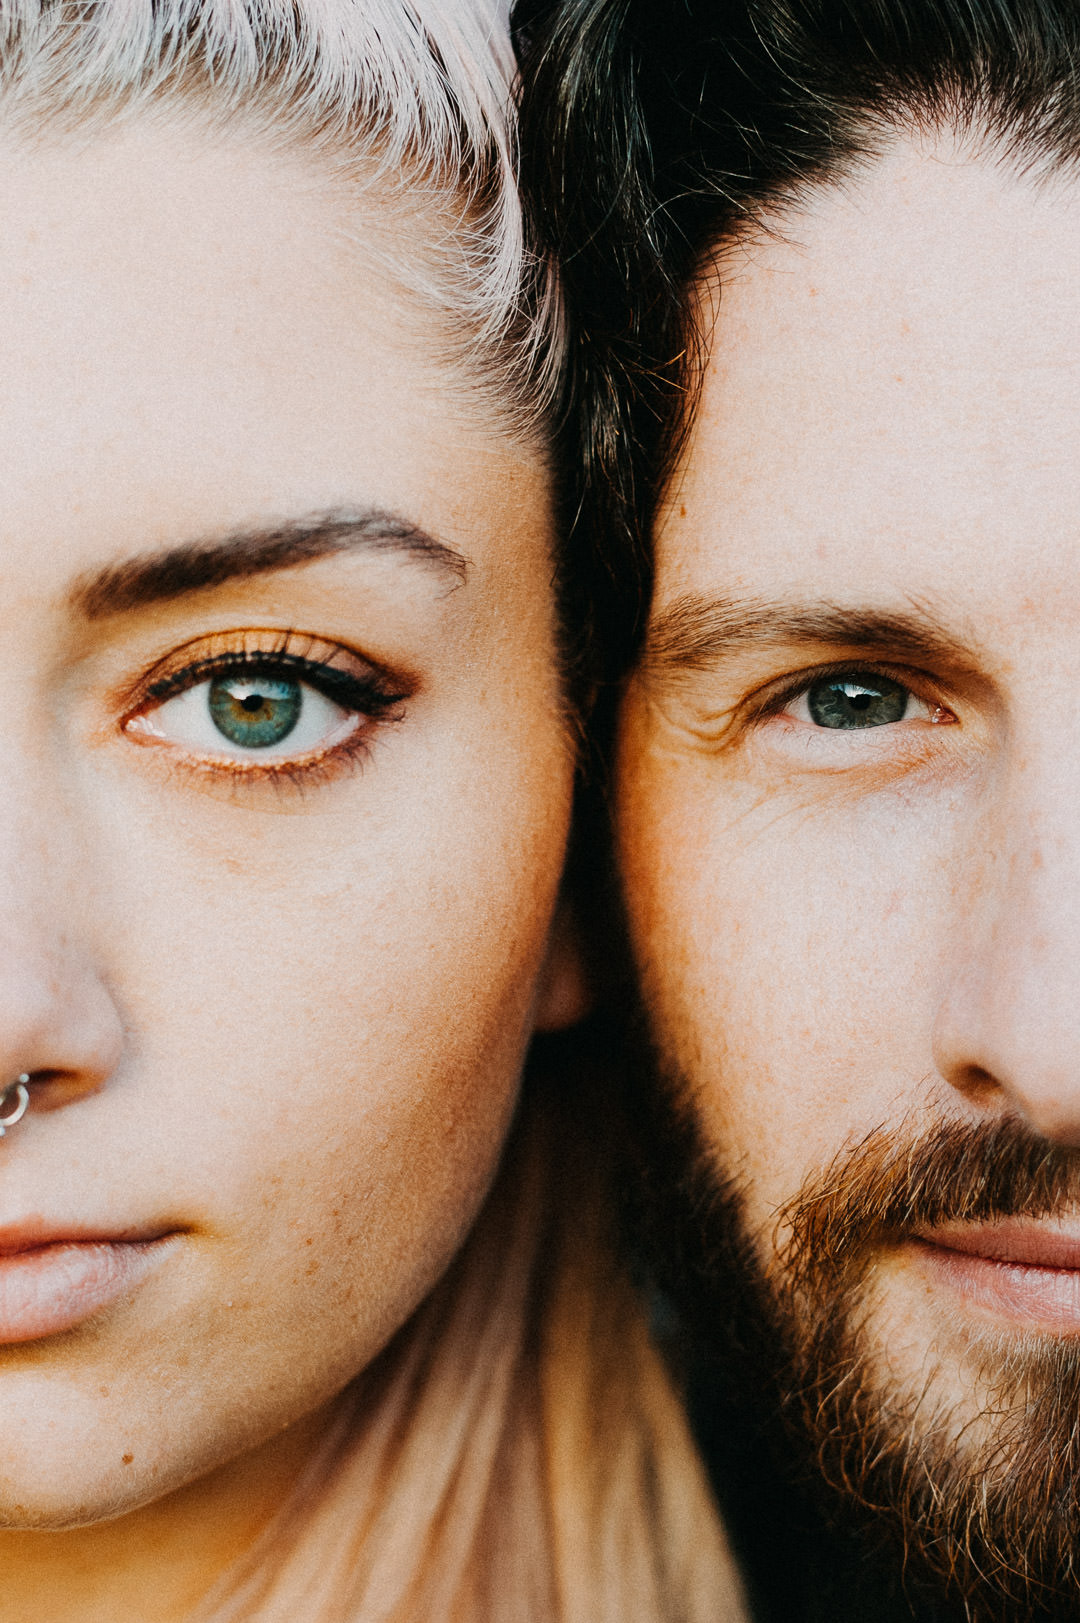 man and woman close up eyes